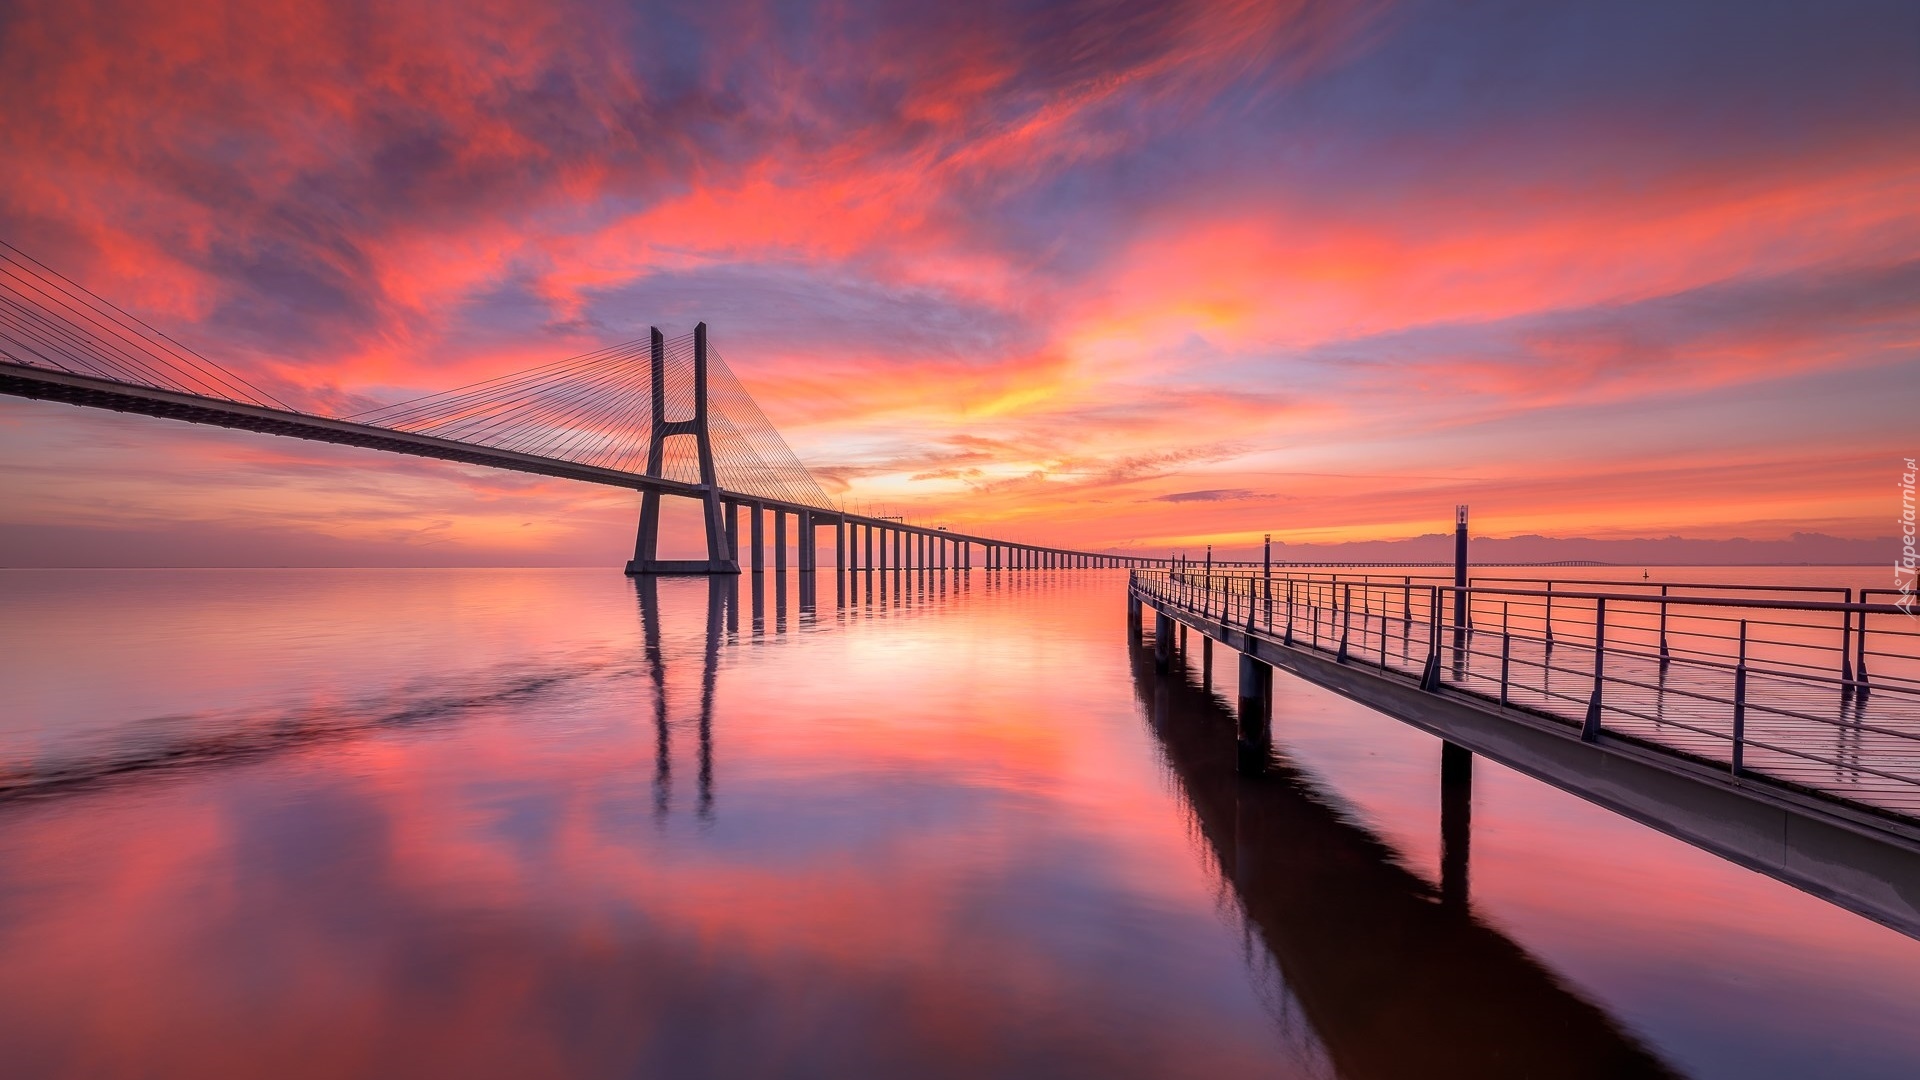 Rzeka Tag, Zachód słońca, Most Vasco da Gama, Lizbona, Portugalia